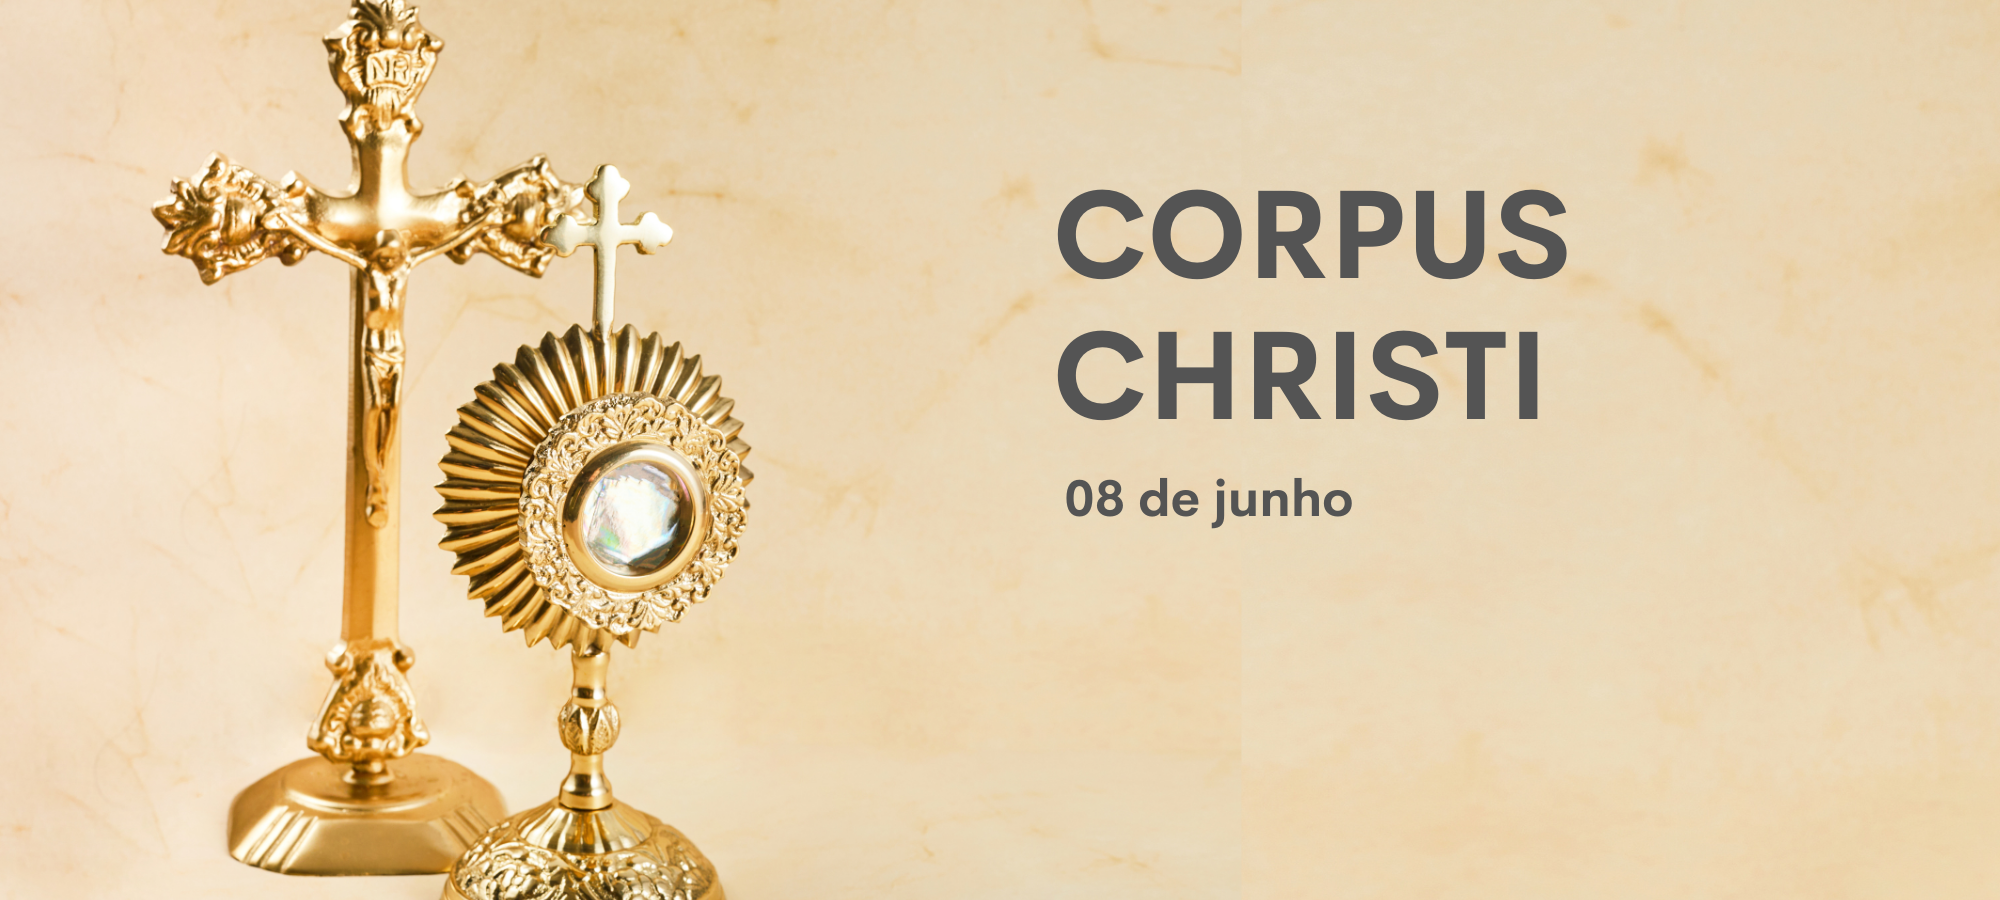  بالاخره آیا روز کورپوس کریستی در برزیل تعطیل محسوب می شود یا خیر؟